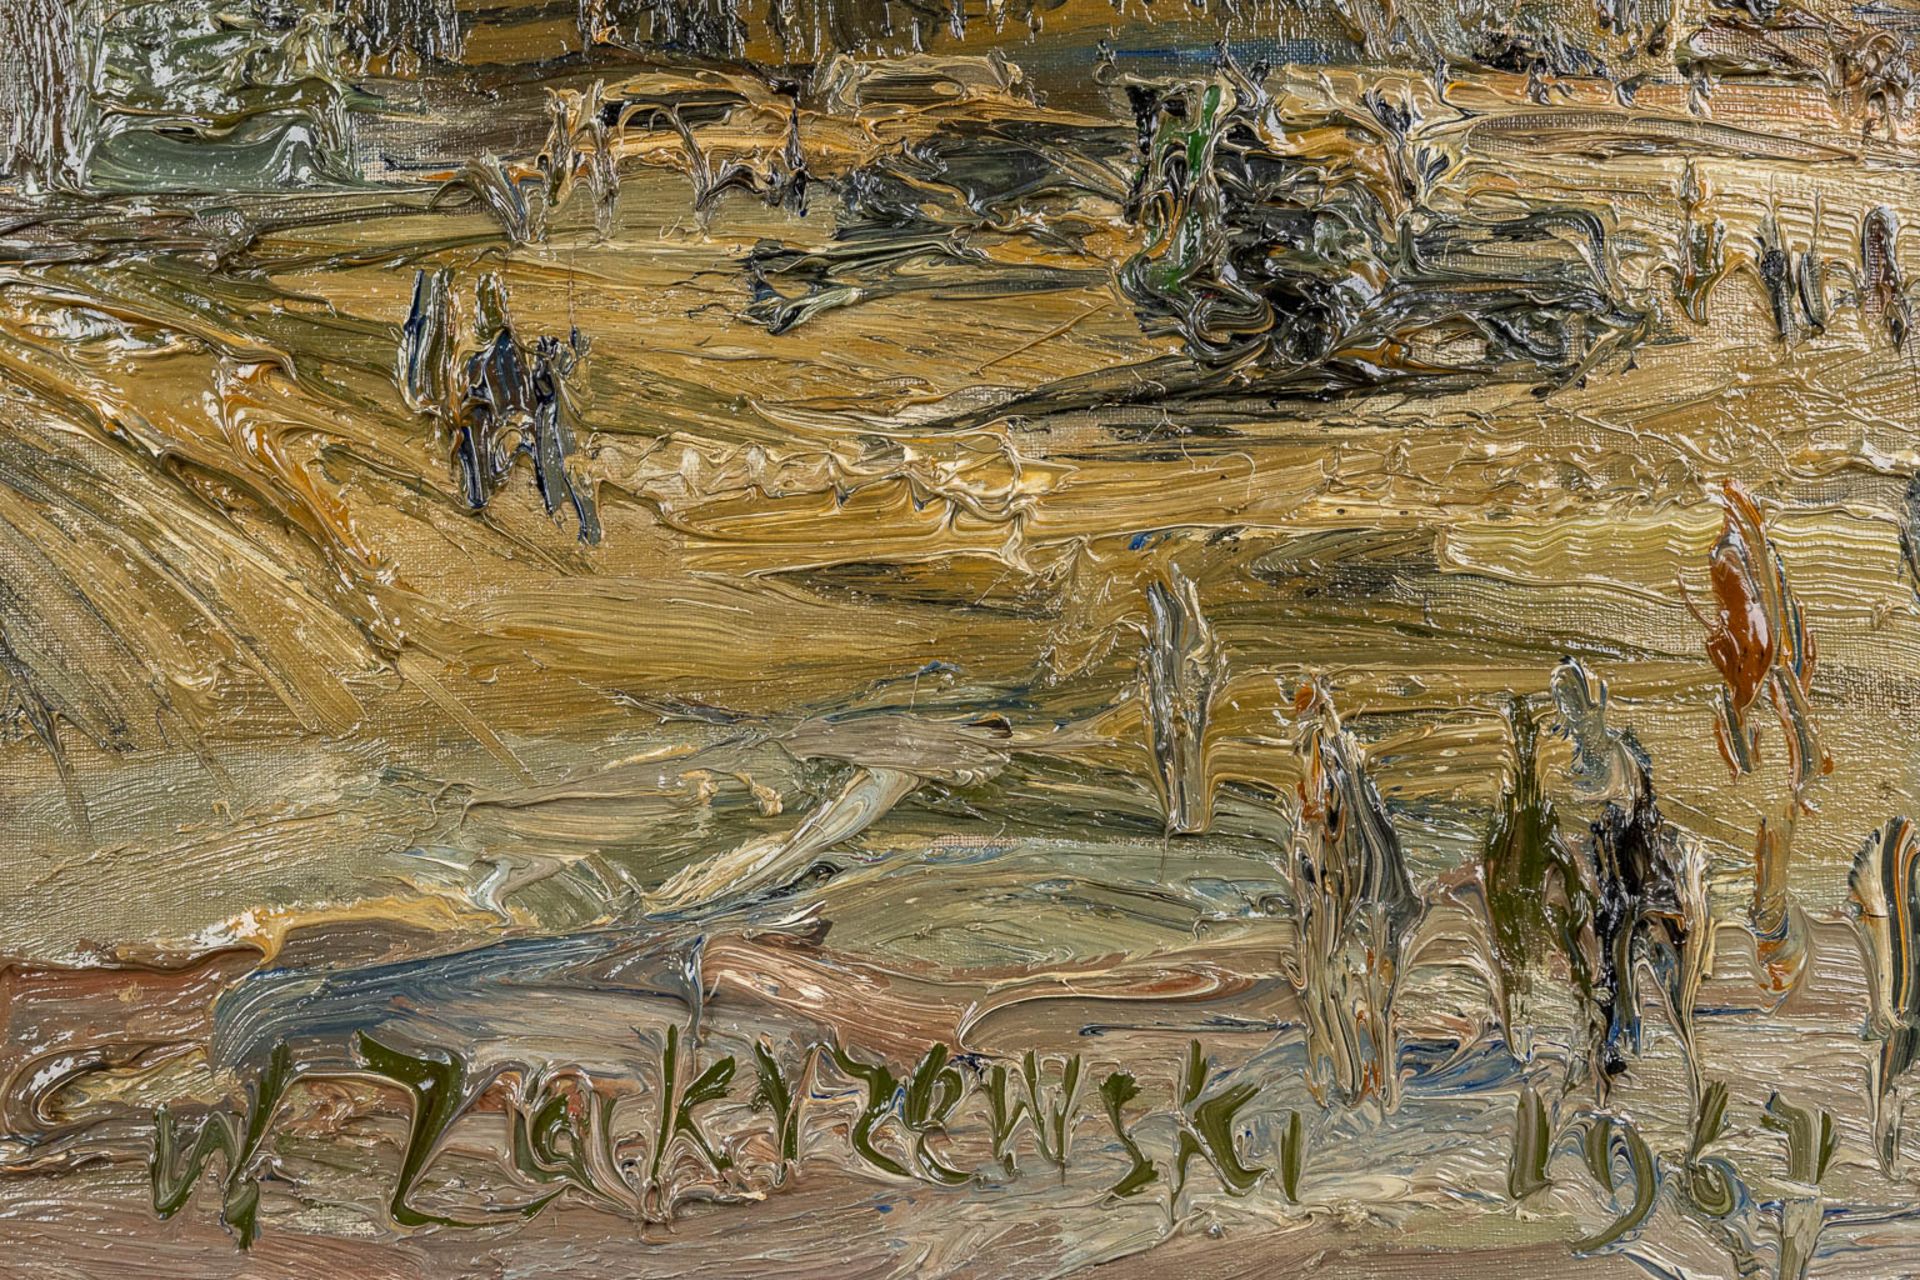 Wlodzimierz ZAKRZEWSKI (1916-1992) 'Plac Zamkowy, Warschaw' oil on canvas. 1967. (W:100 x H:72 cm) - Image 7 of 8